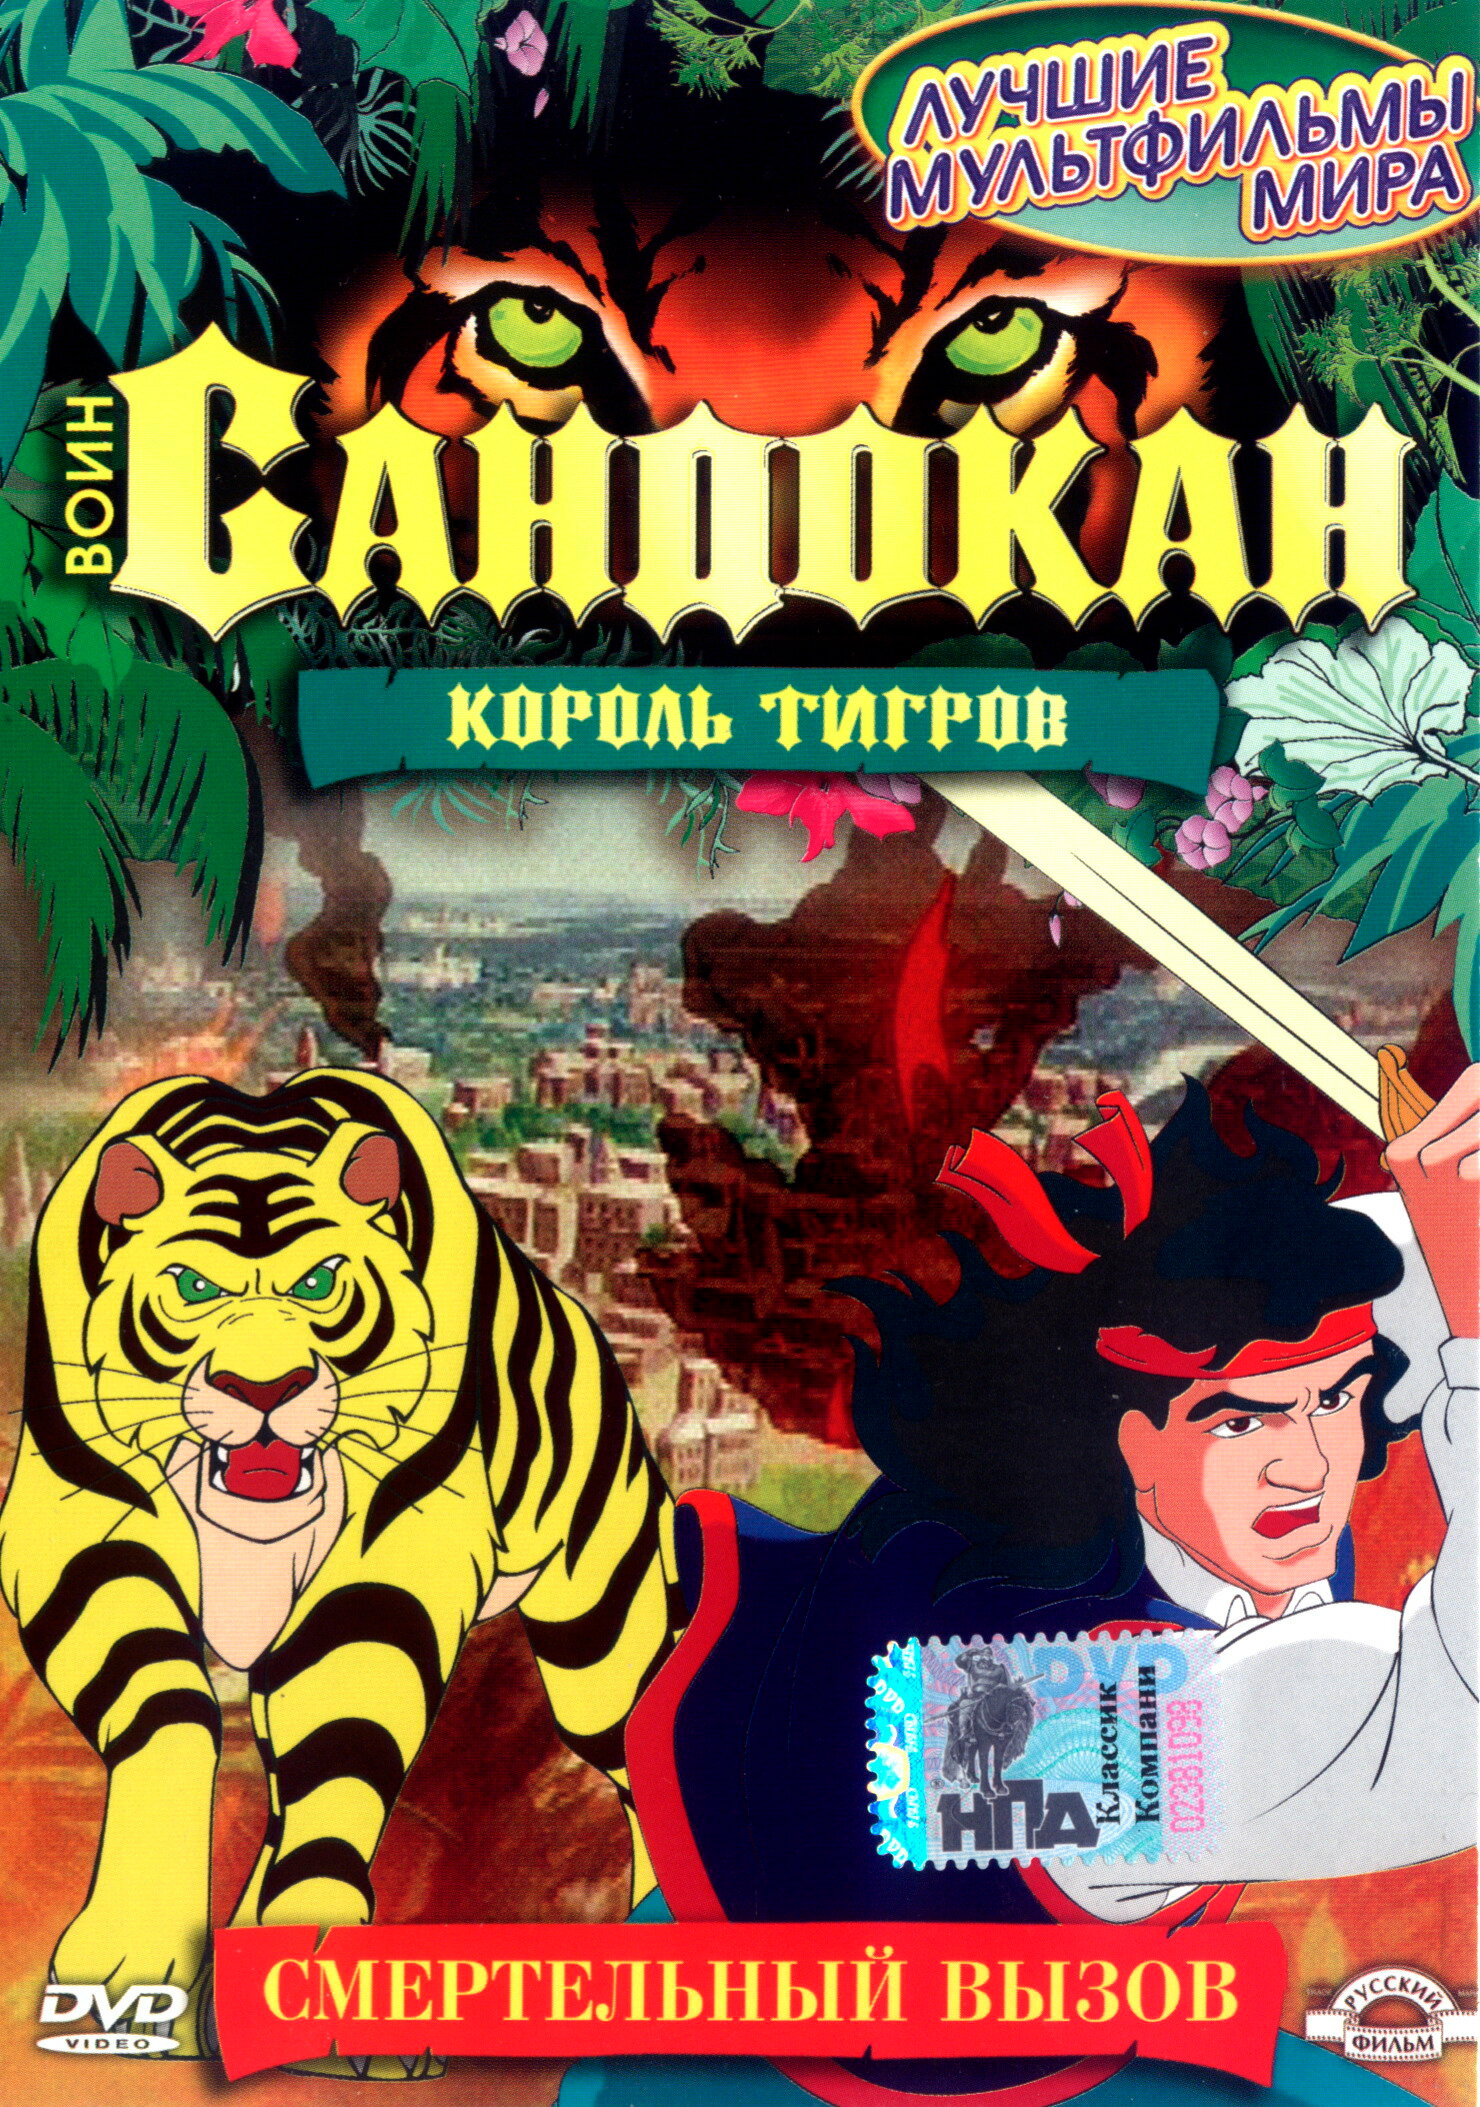 Смотреть сериал Воин Сандокан: Король тигров 2001 года онлайн